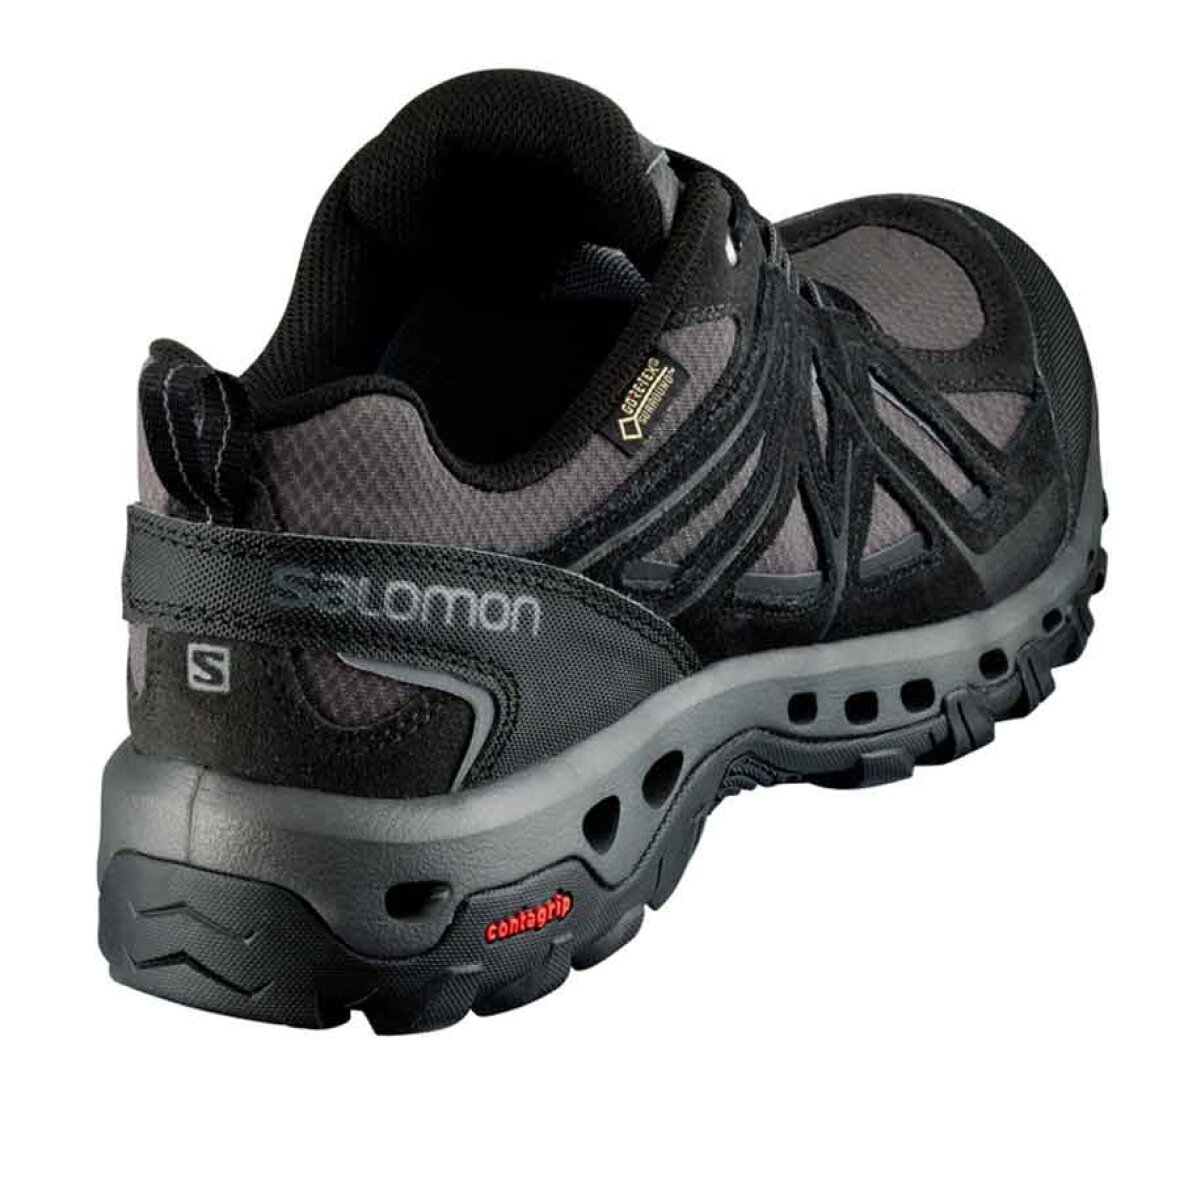 Salomon sko med luft - Super lækker sko med - Køb her